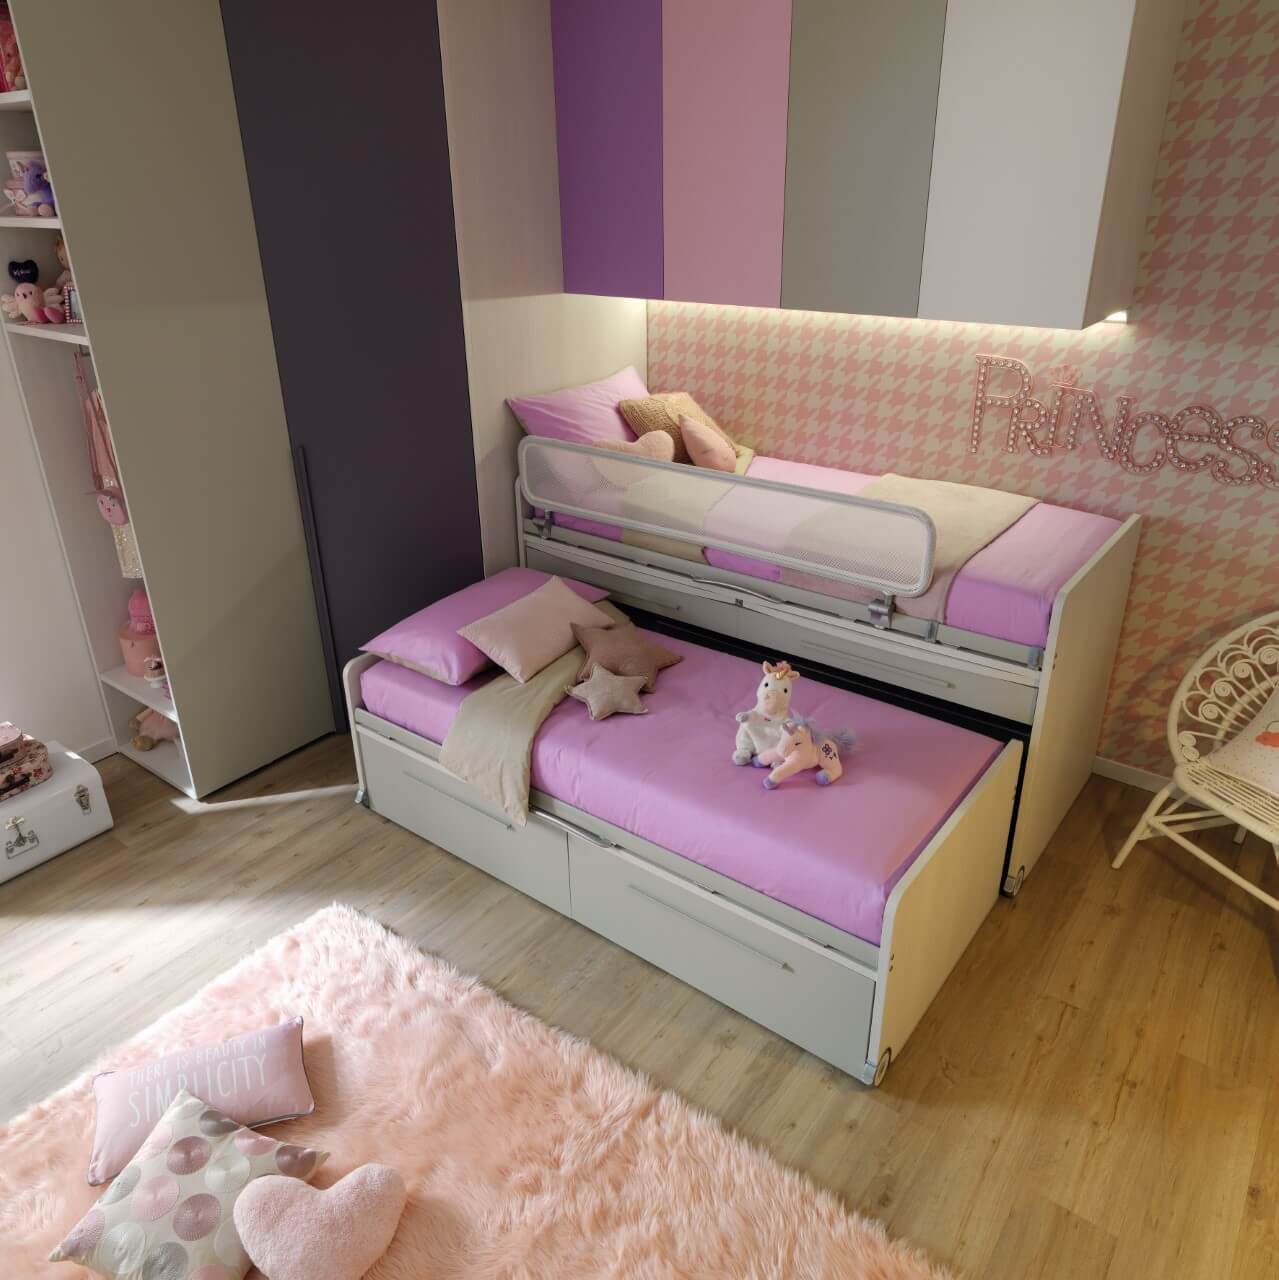 Nábytok pre deti: Ako zariadiť detskú izbu?